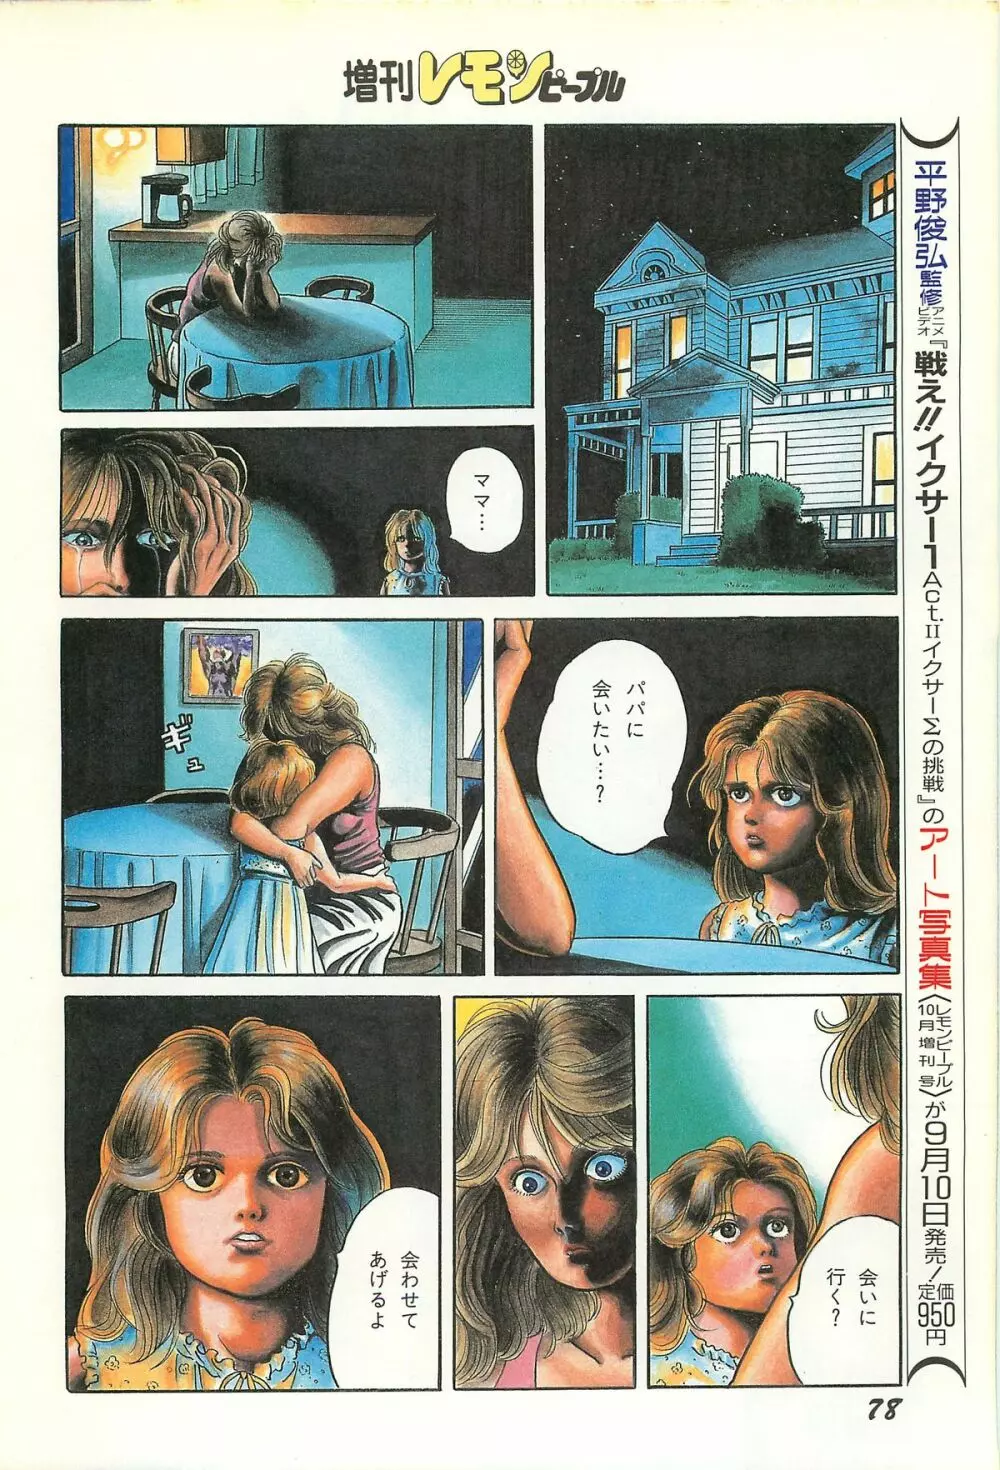 レモンピープル 1986年9月増刊号 Vol.61 オールカラー 80ページ